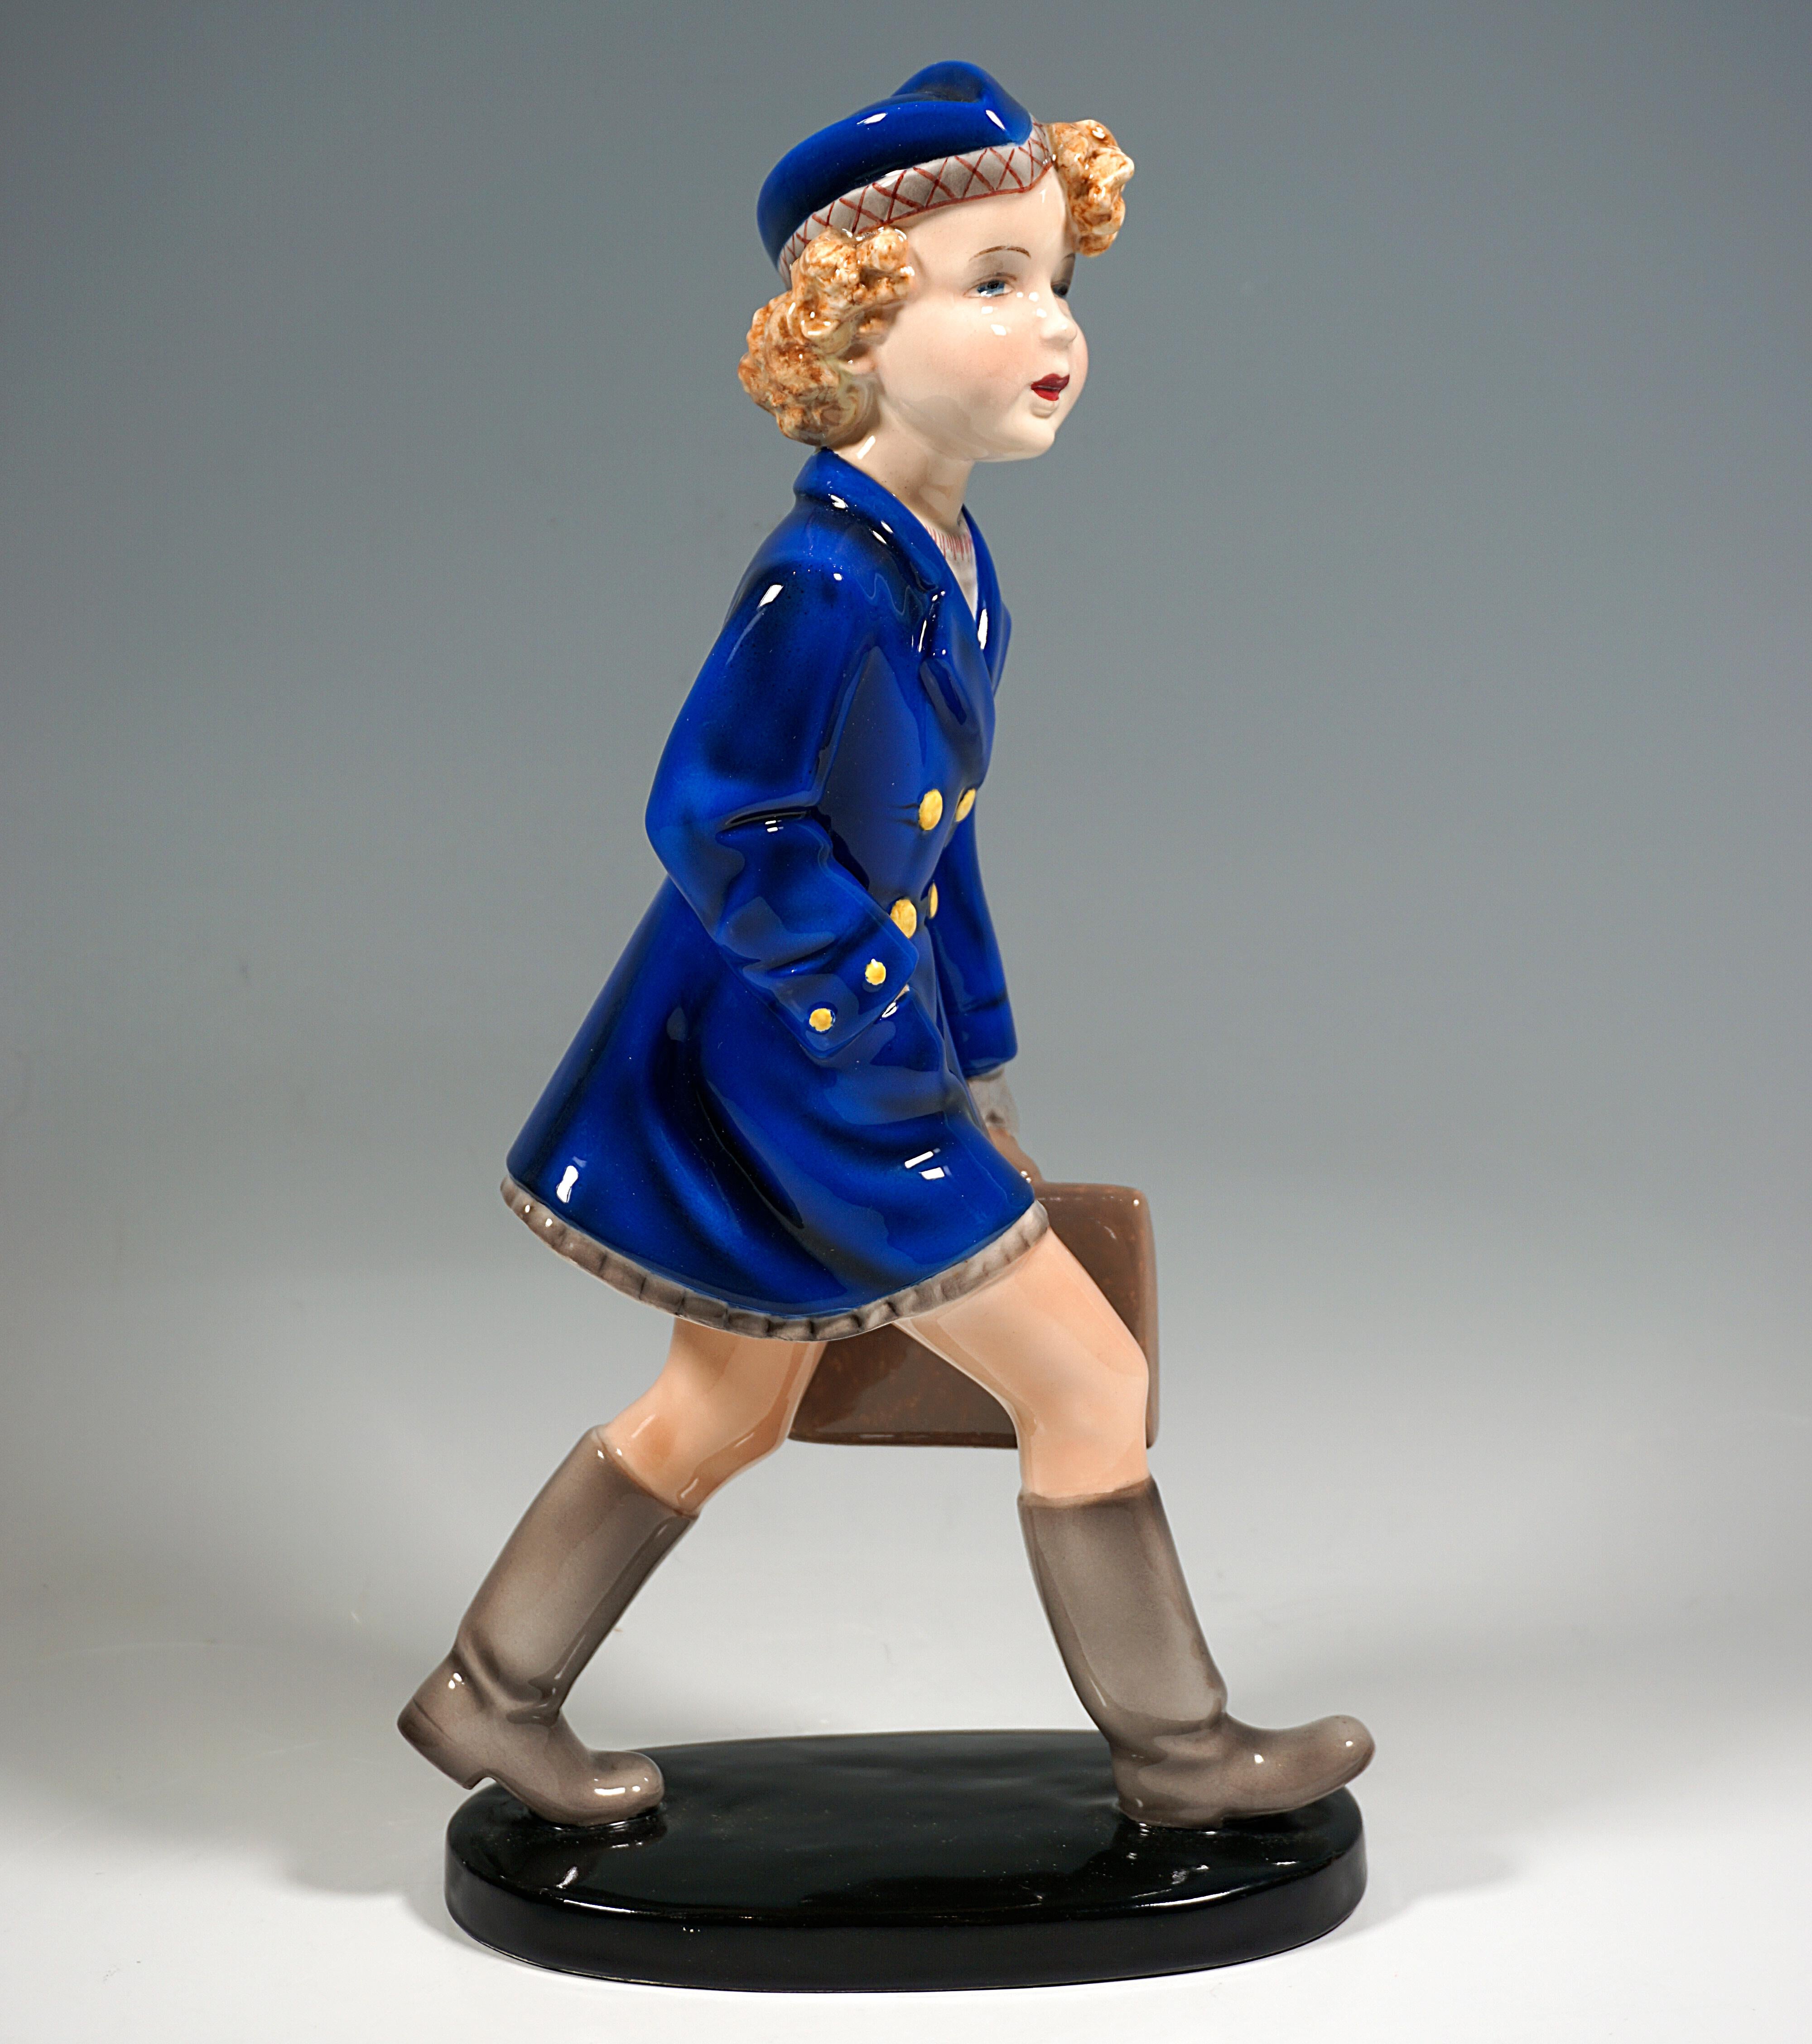 Très rare et exceptionnelle figure en céramique d'art Goldscheider de la fin des années 1930 :
Fille marchant en manteau bleu sur une robe beige et un chapeau bleu assorti avec une bordure beige avec un motif de broderie rouge, des bottes et des